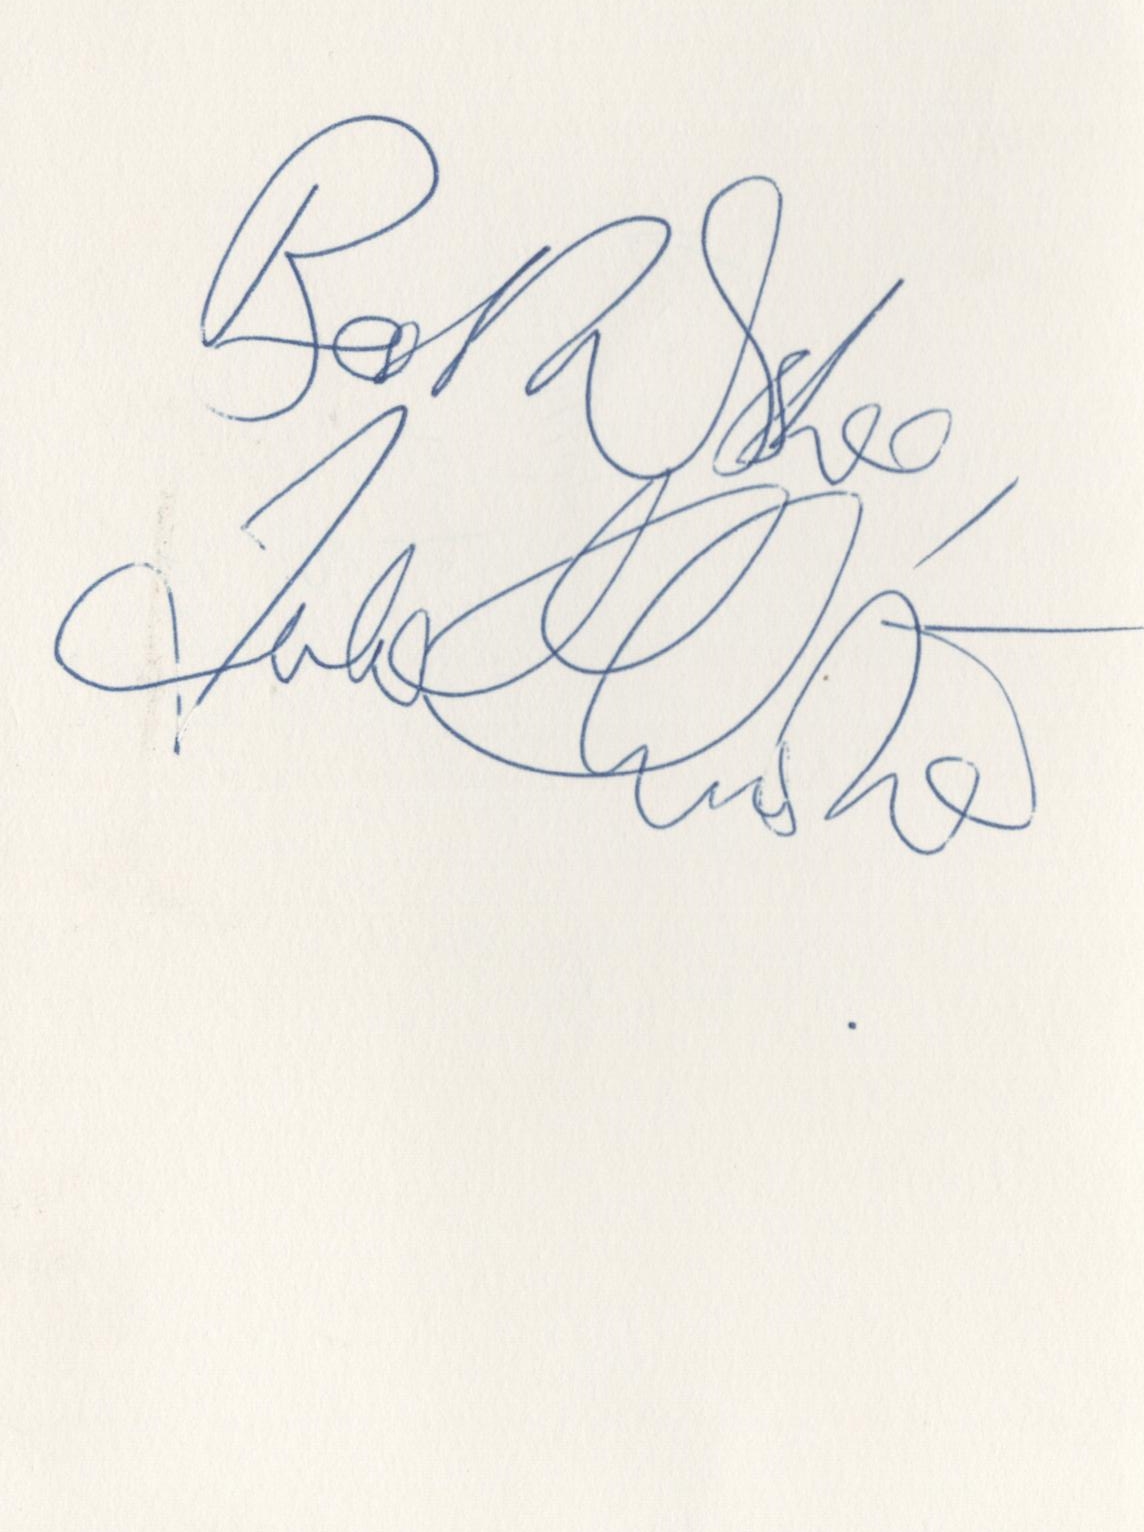 Julie Christie signed 6x4 white card. Julie Frances Christie (born 14 April 1940) is a British